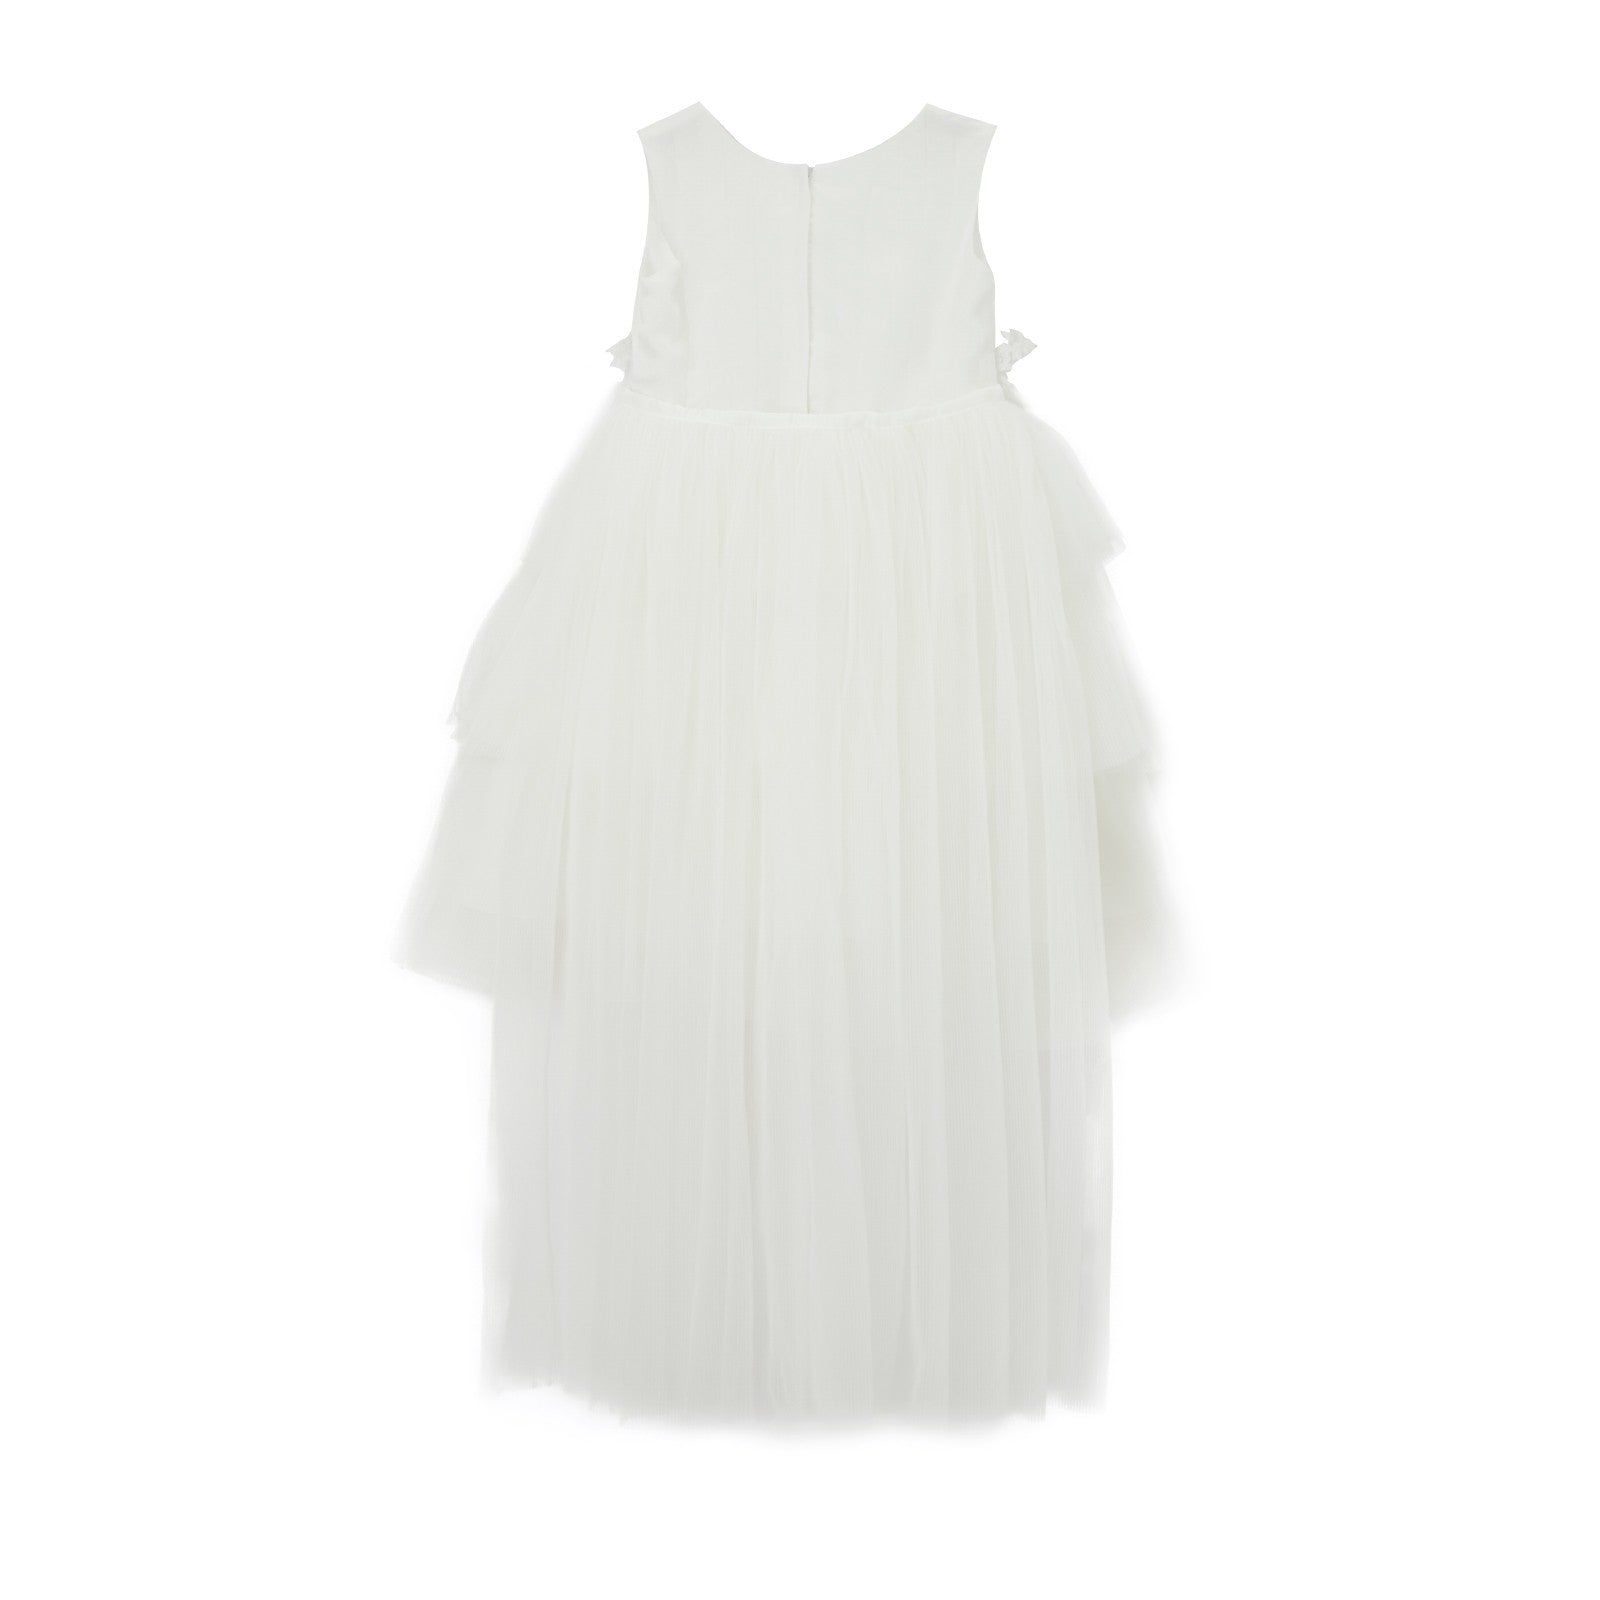 Estelle Dress in White